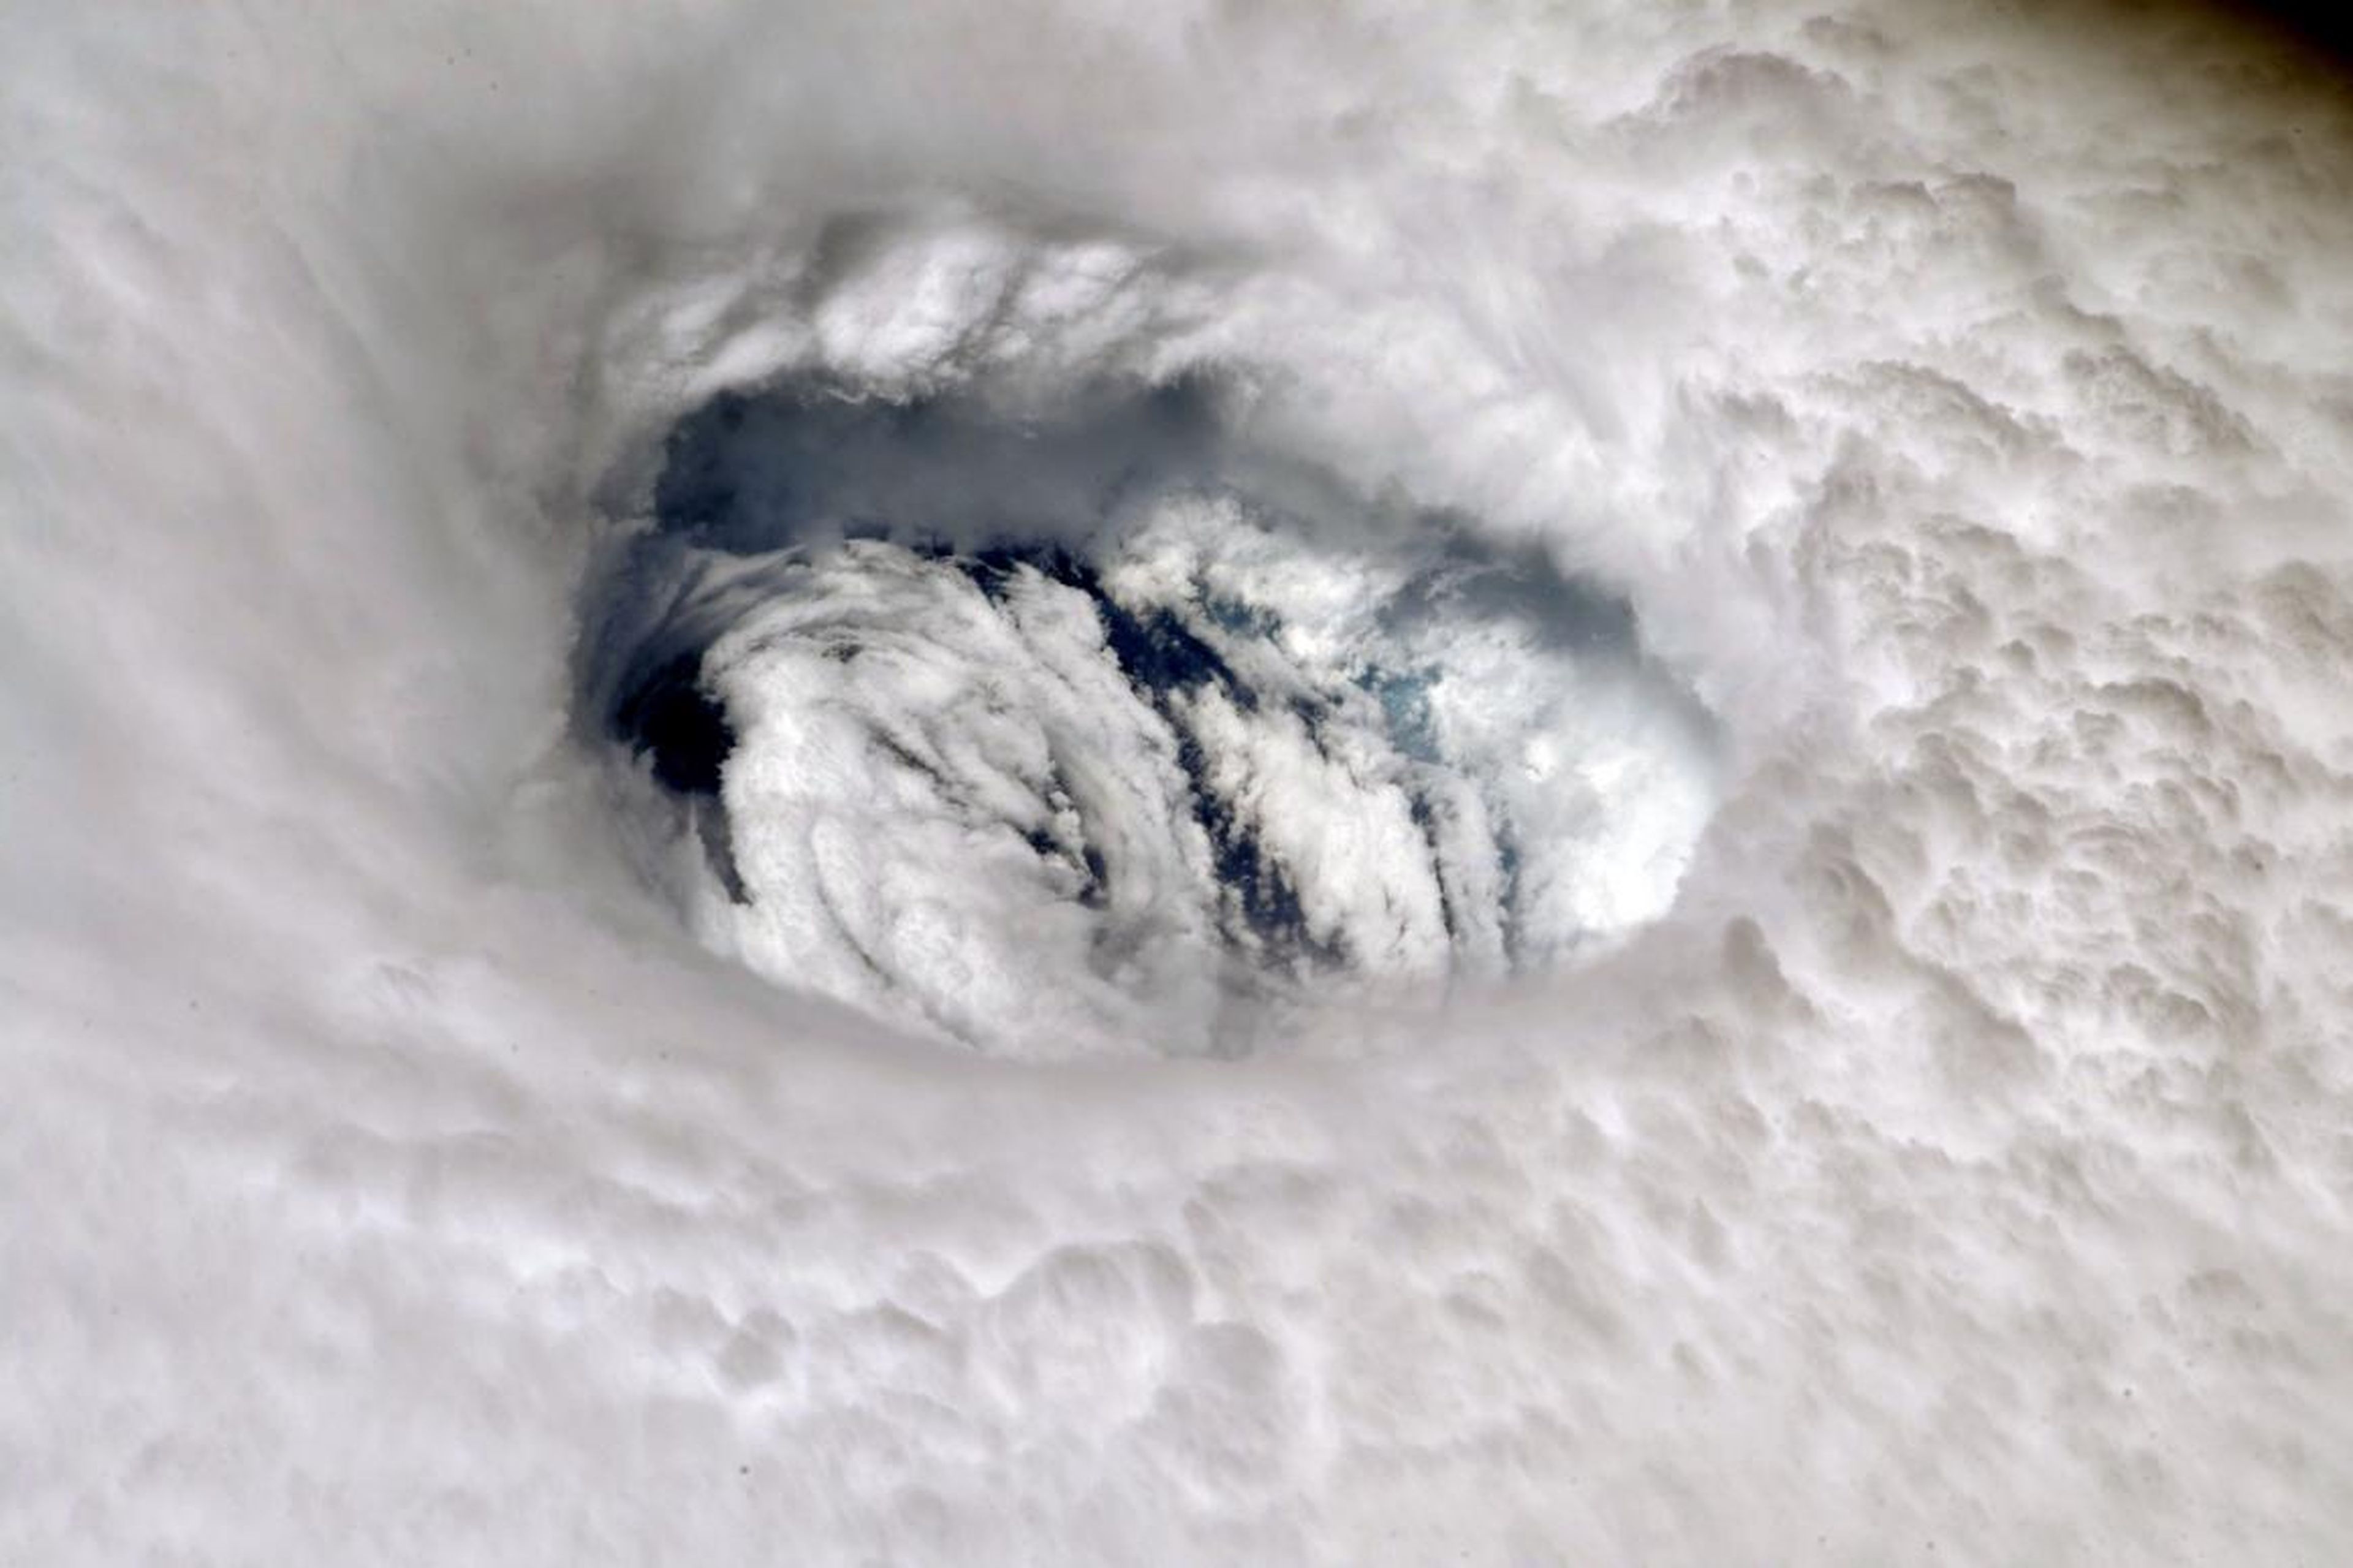 El astronauta Nick Hague, a bordo de la EEI, publicó esta fotografía del huracán Dorian en su cuenta de Twitter el 2 de septiembre de 2019. Agregó: "Puedes sentir el poder de la tormenta cuando la miras desde arriba. ¡Mantente a salvo!".